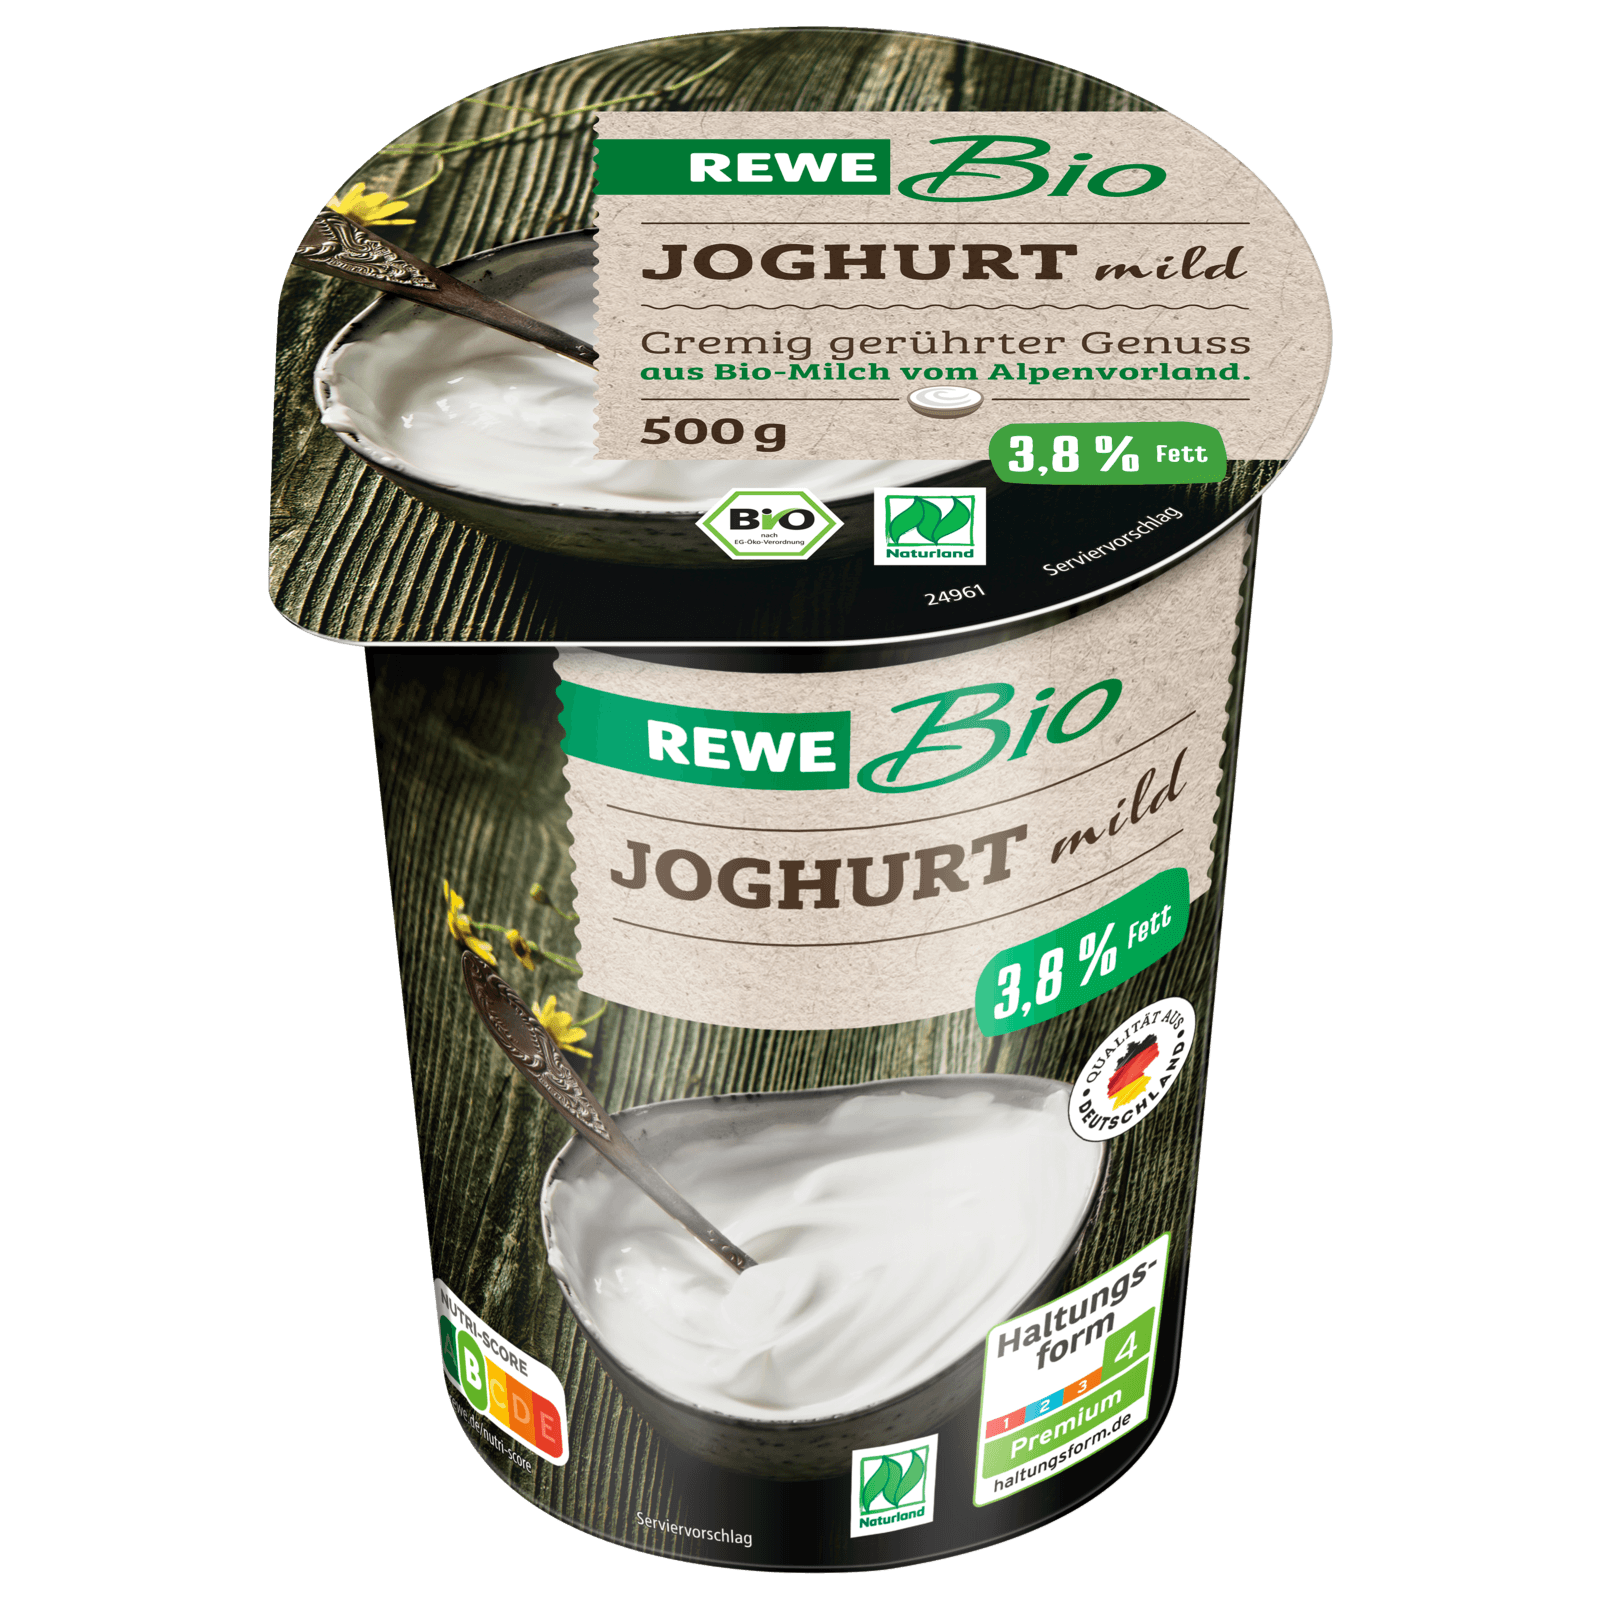 REWE Bio Joghurt mild 500g